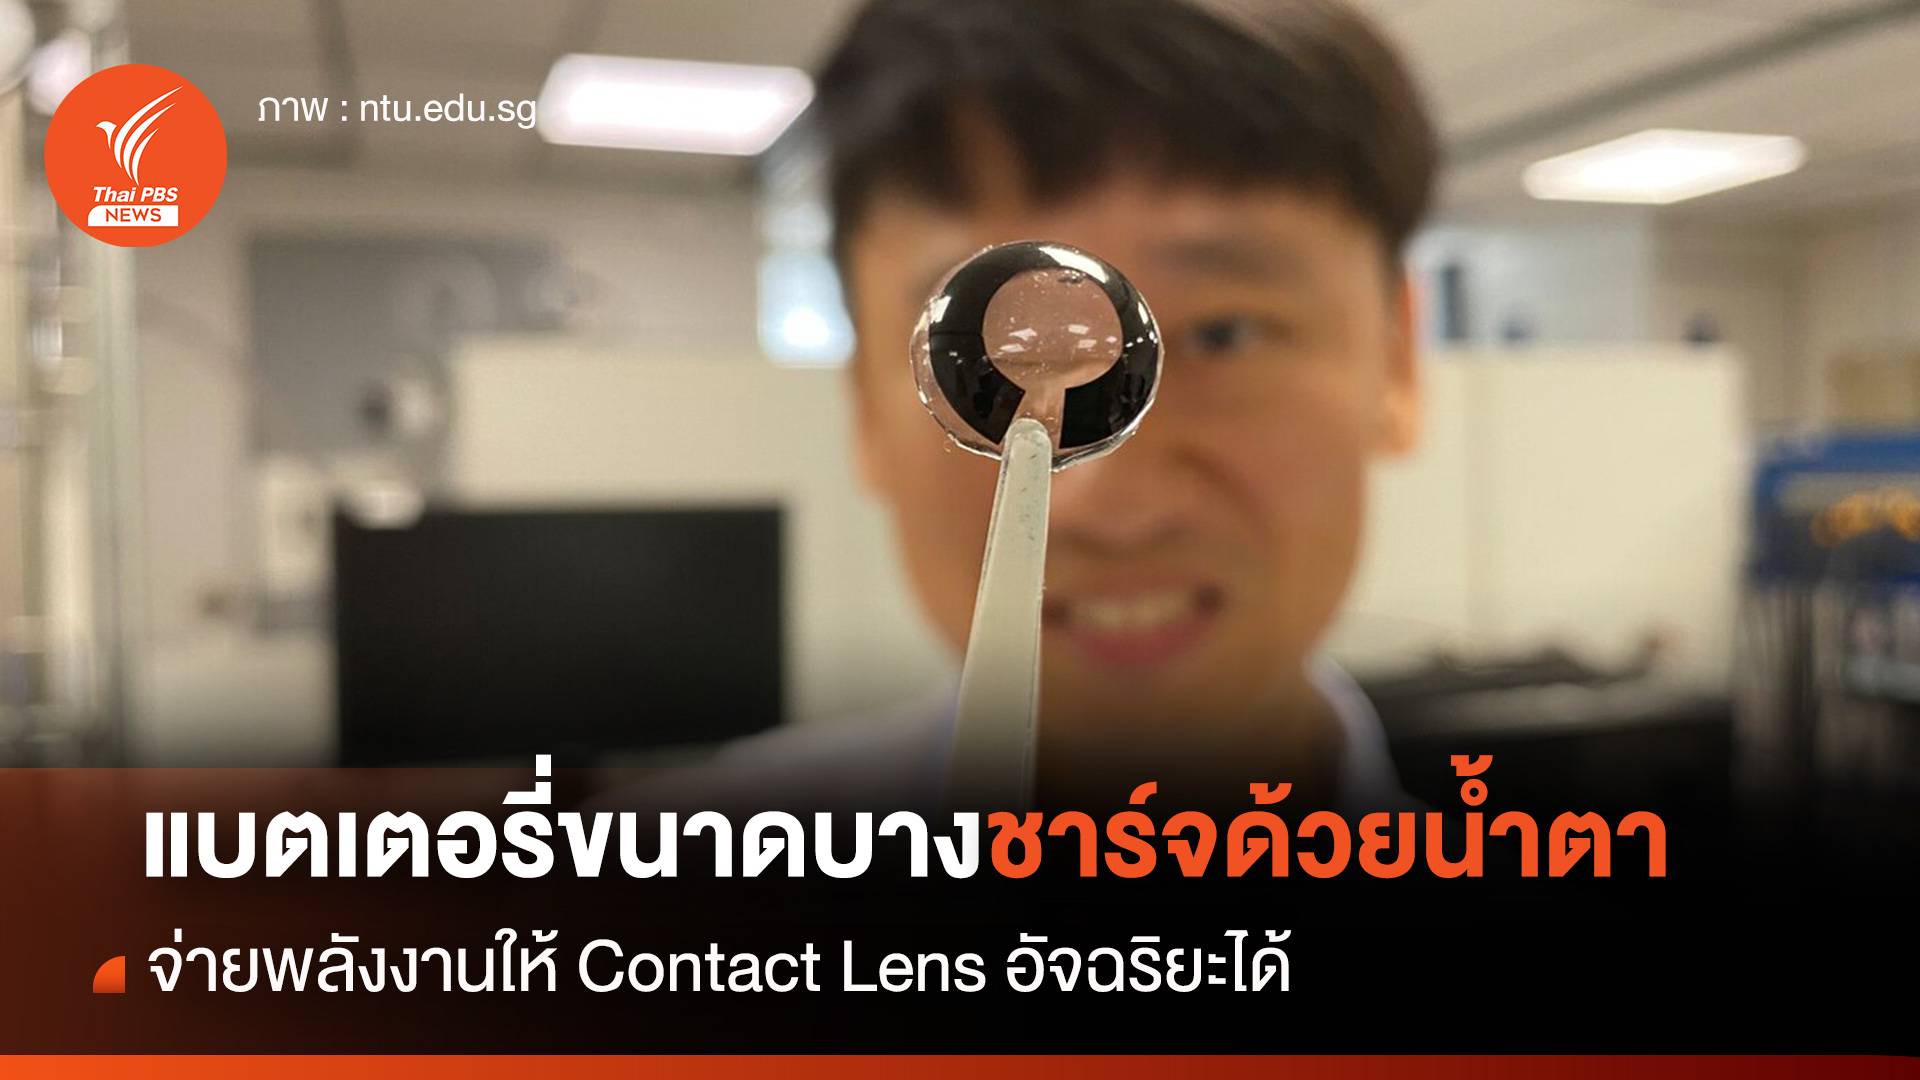 แบตเตอรี่ขนาดบางชาร์จด้วยน้ำตา จ่ายพลังงานให้ Contact Lens อัจฉริยะ